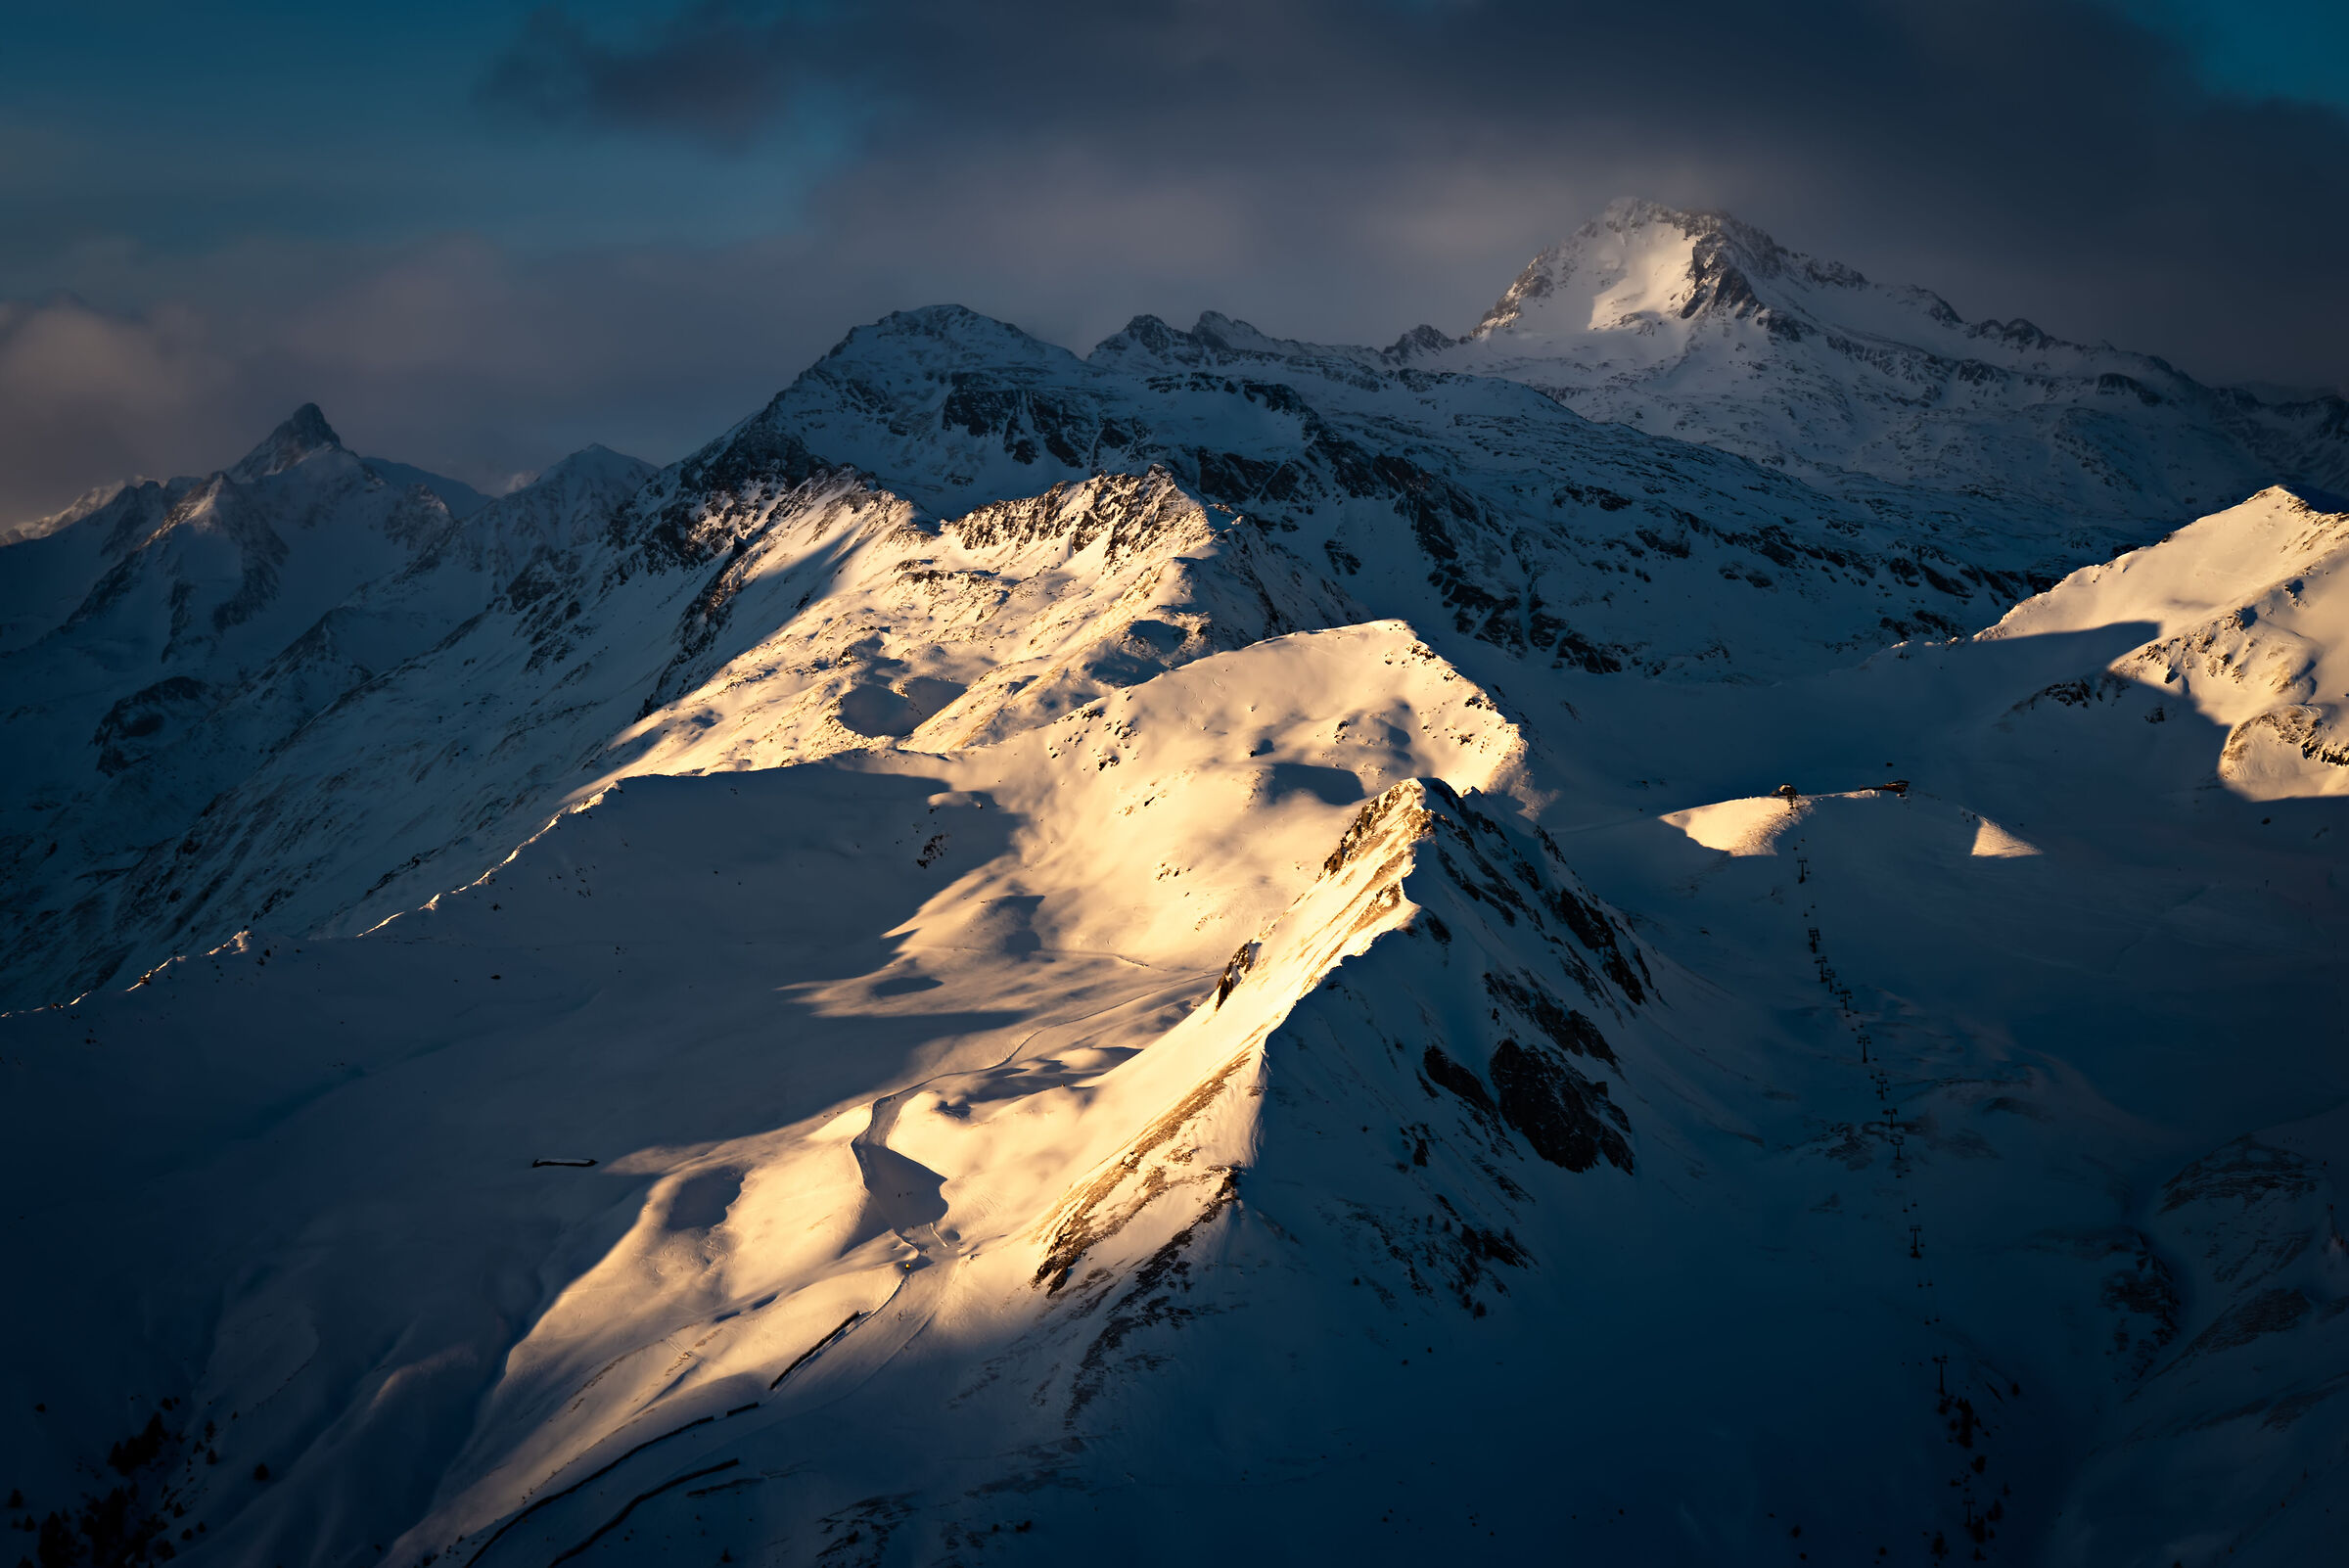 Last light on Alpi_02...